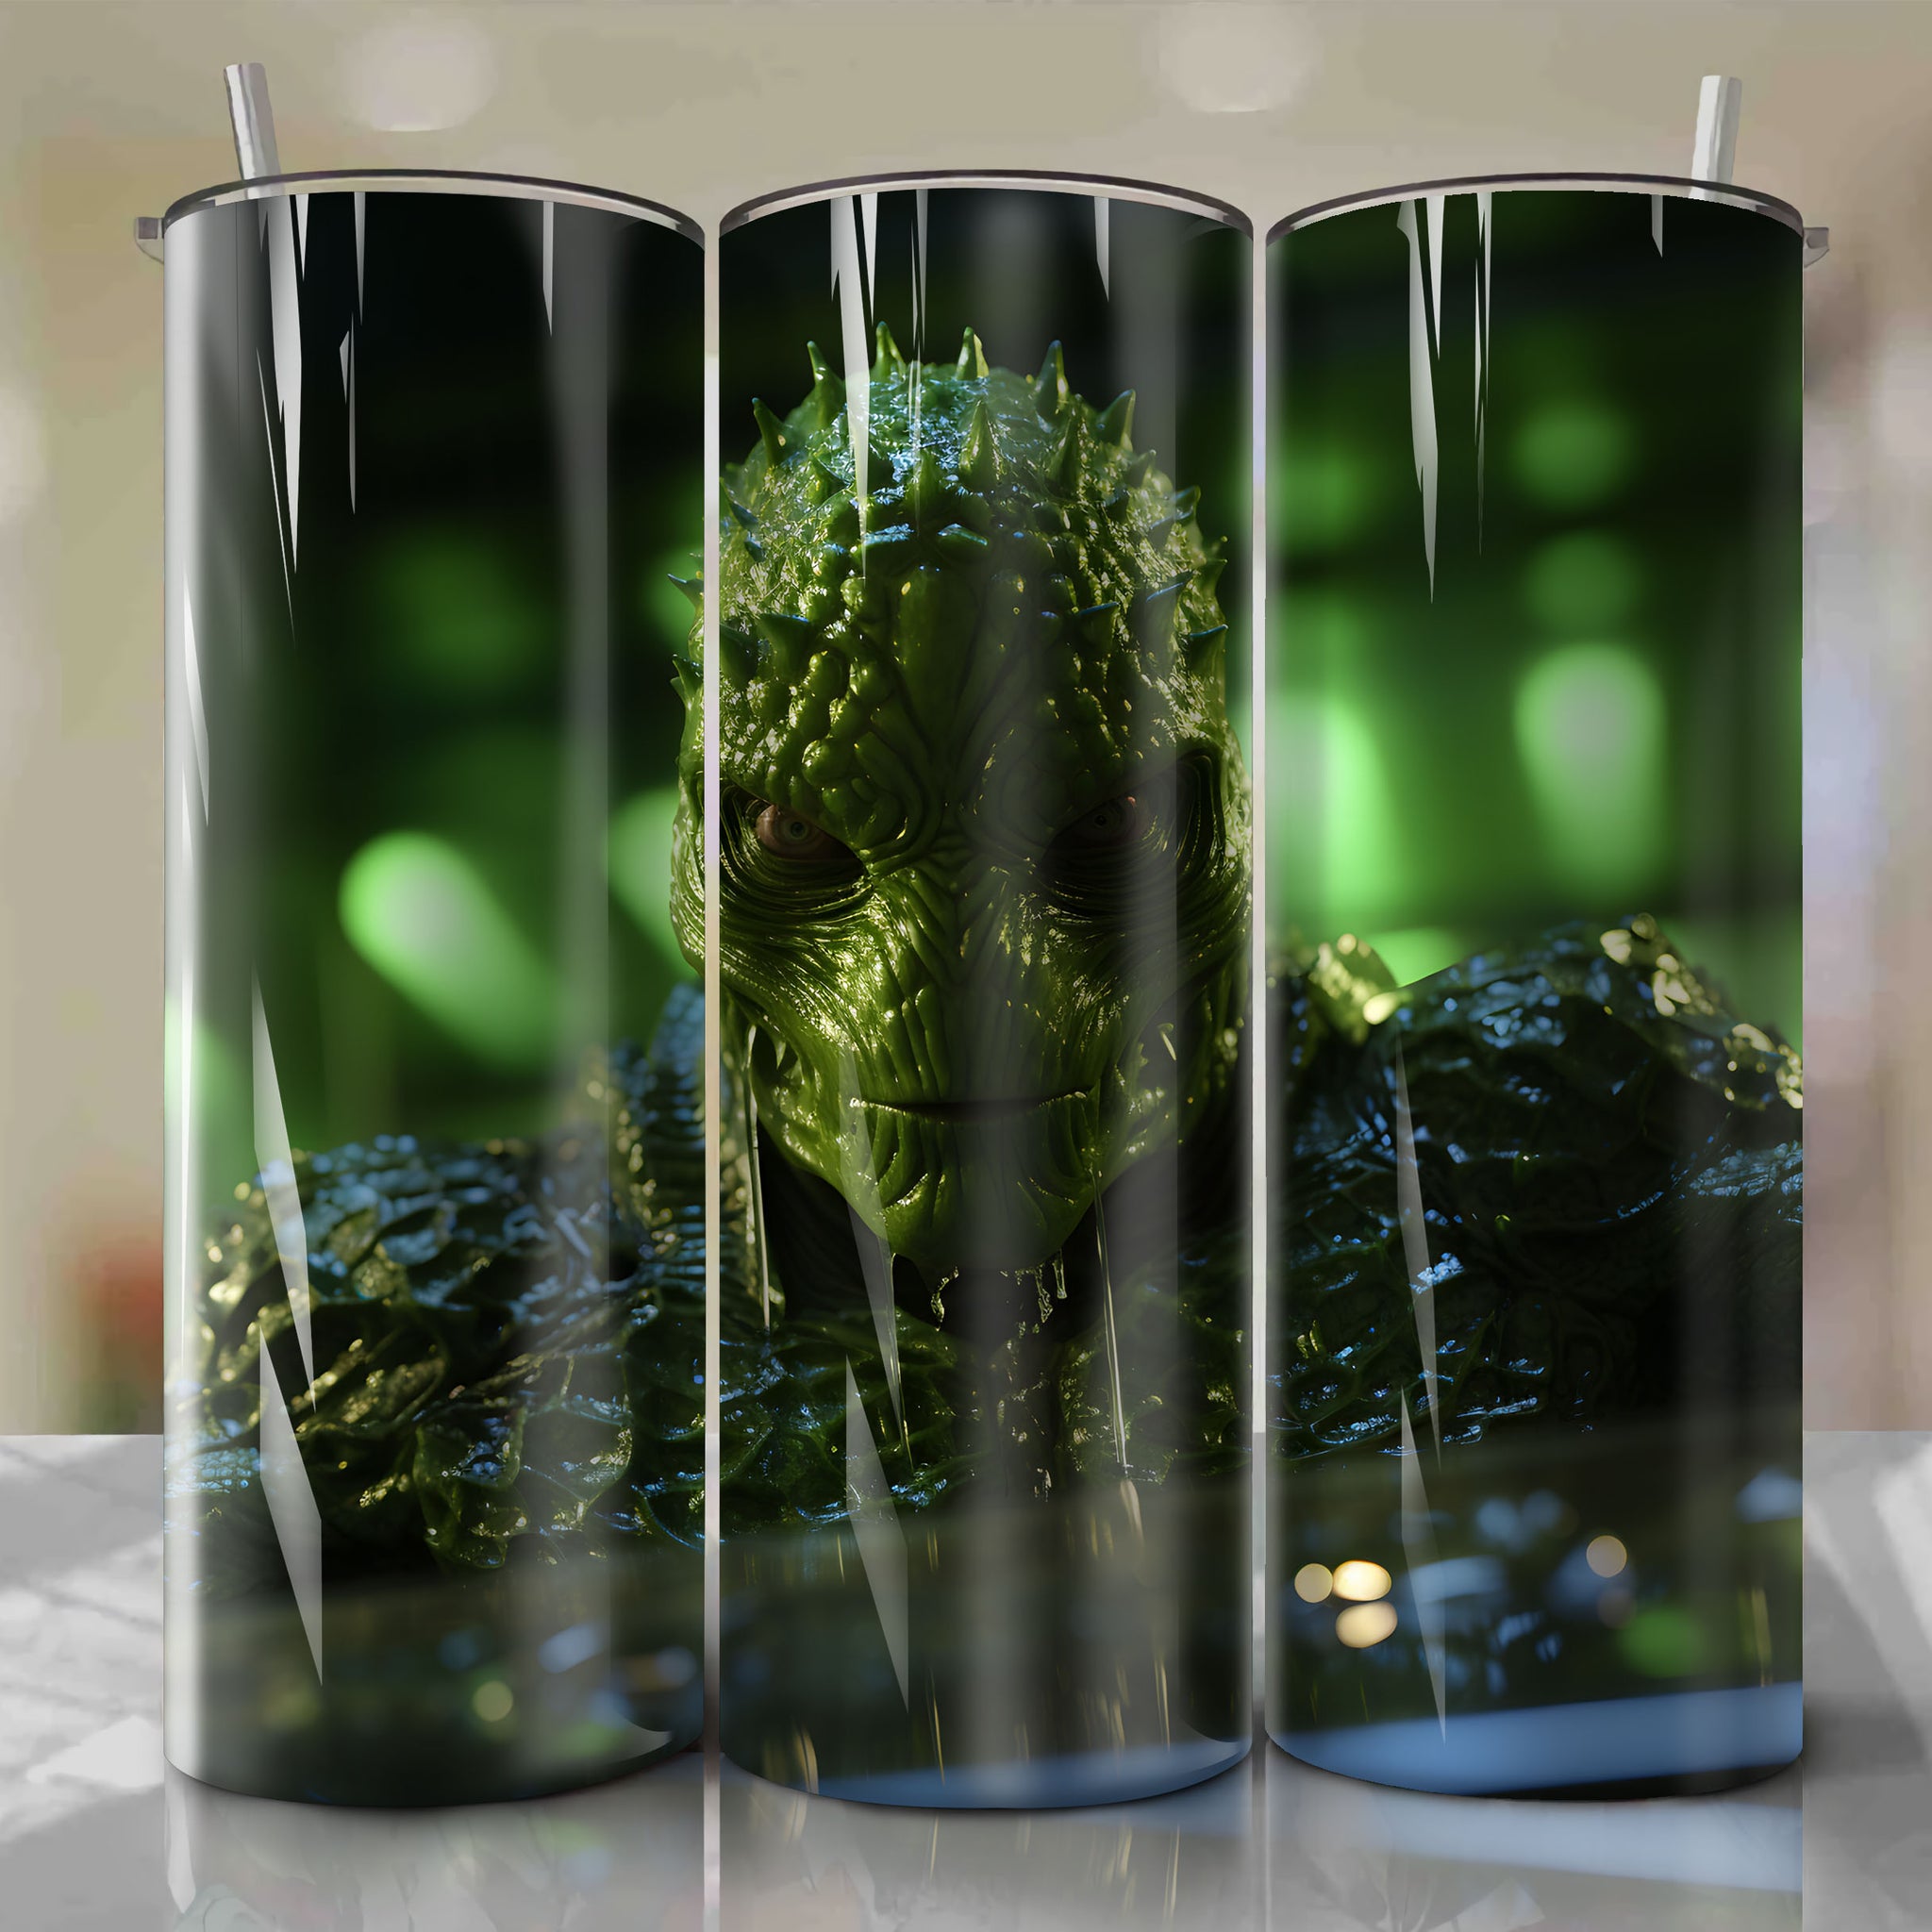 20 Oz Tumbler Wrap - Exquisite Design for Your Beverage Container
